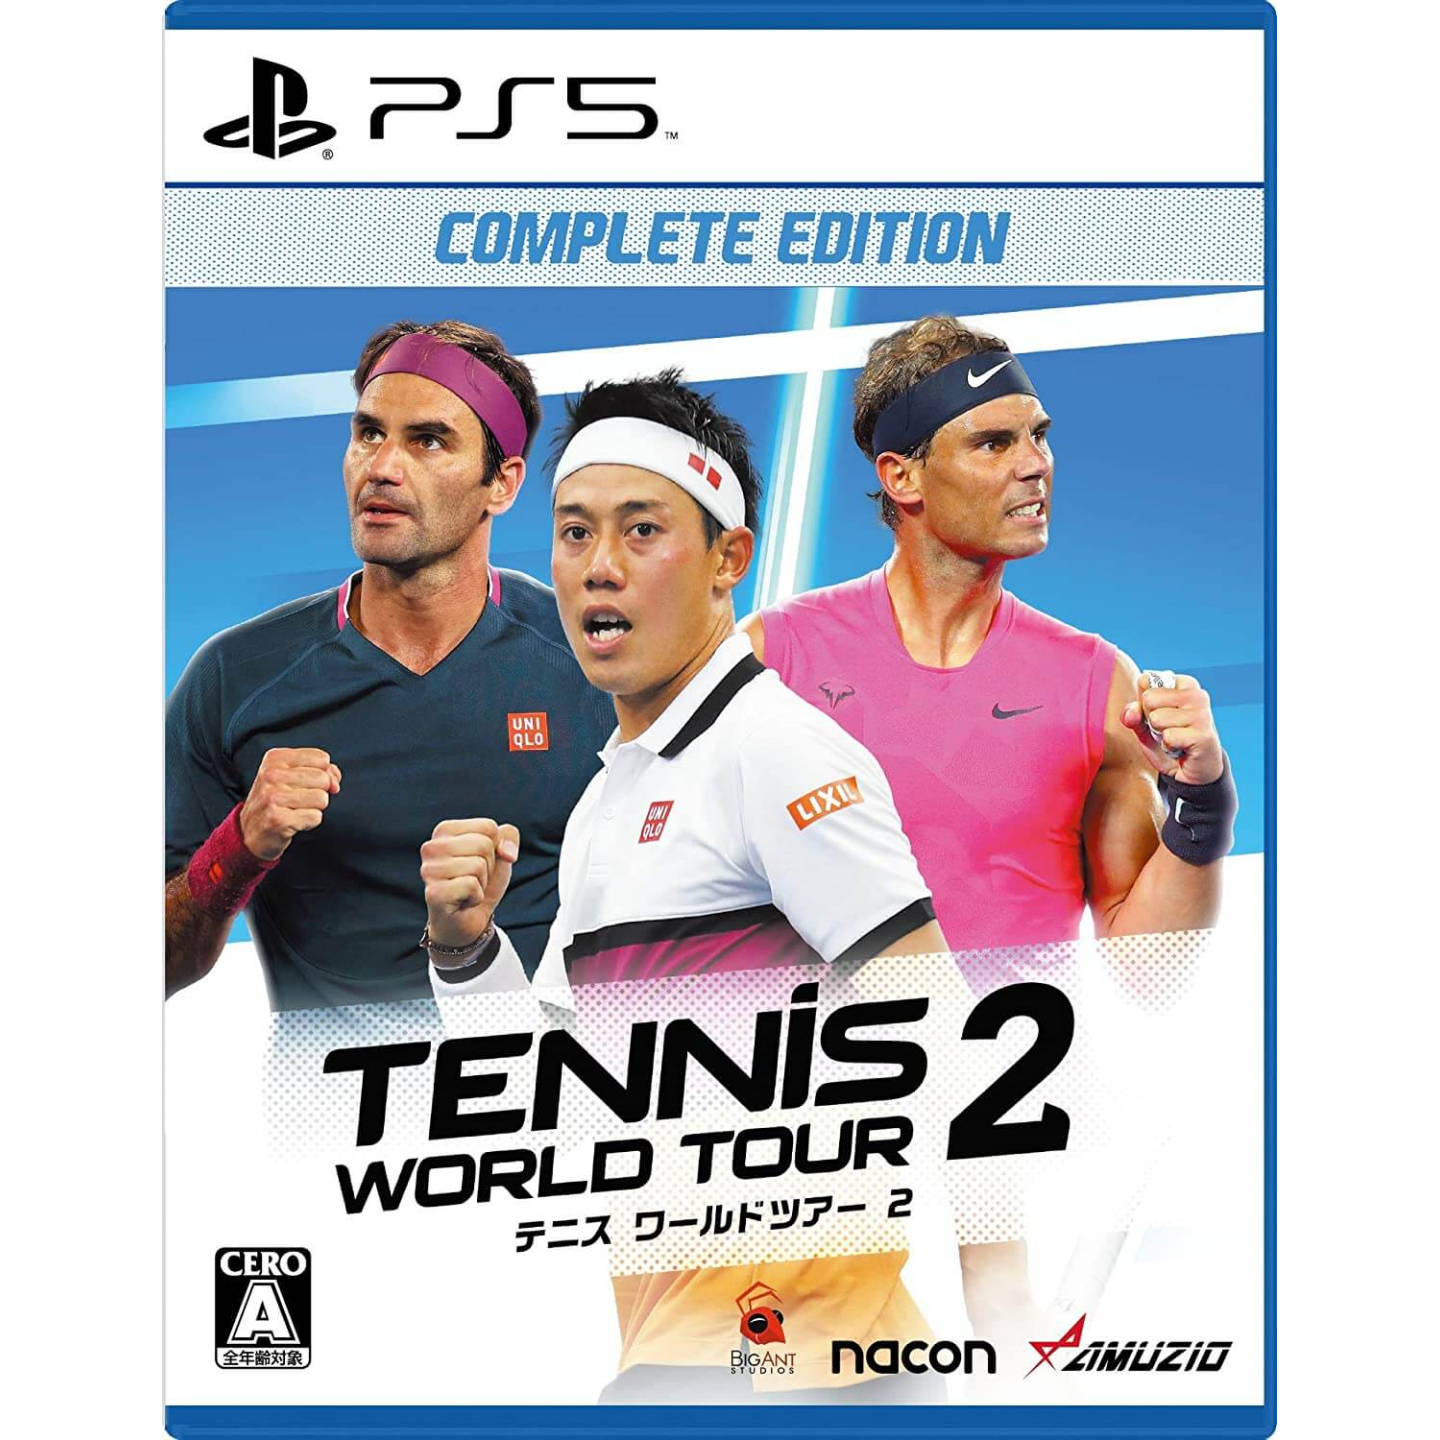 Tennis 2 World Tour